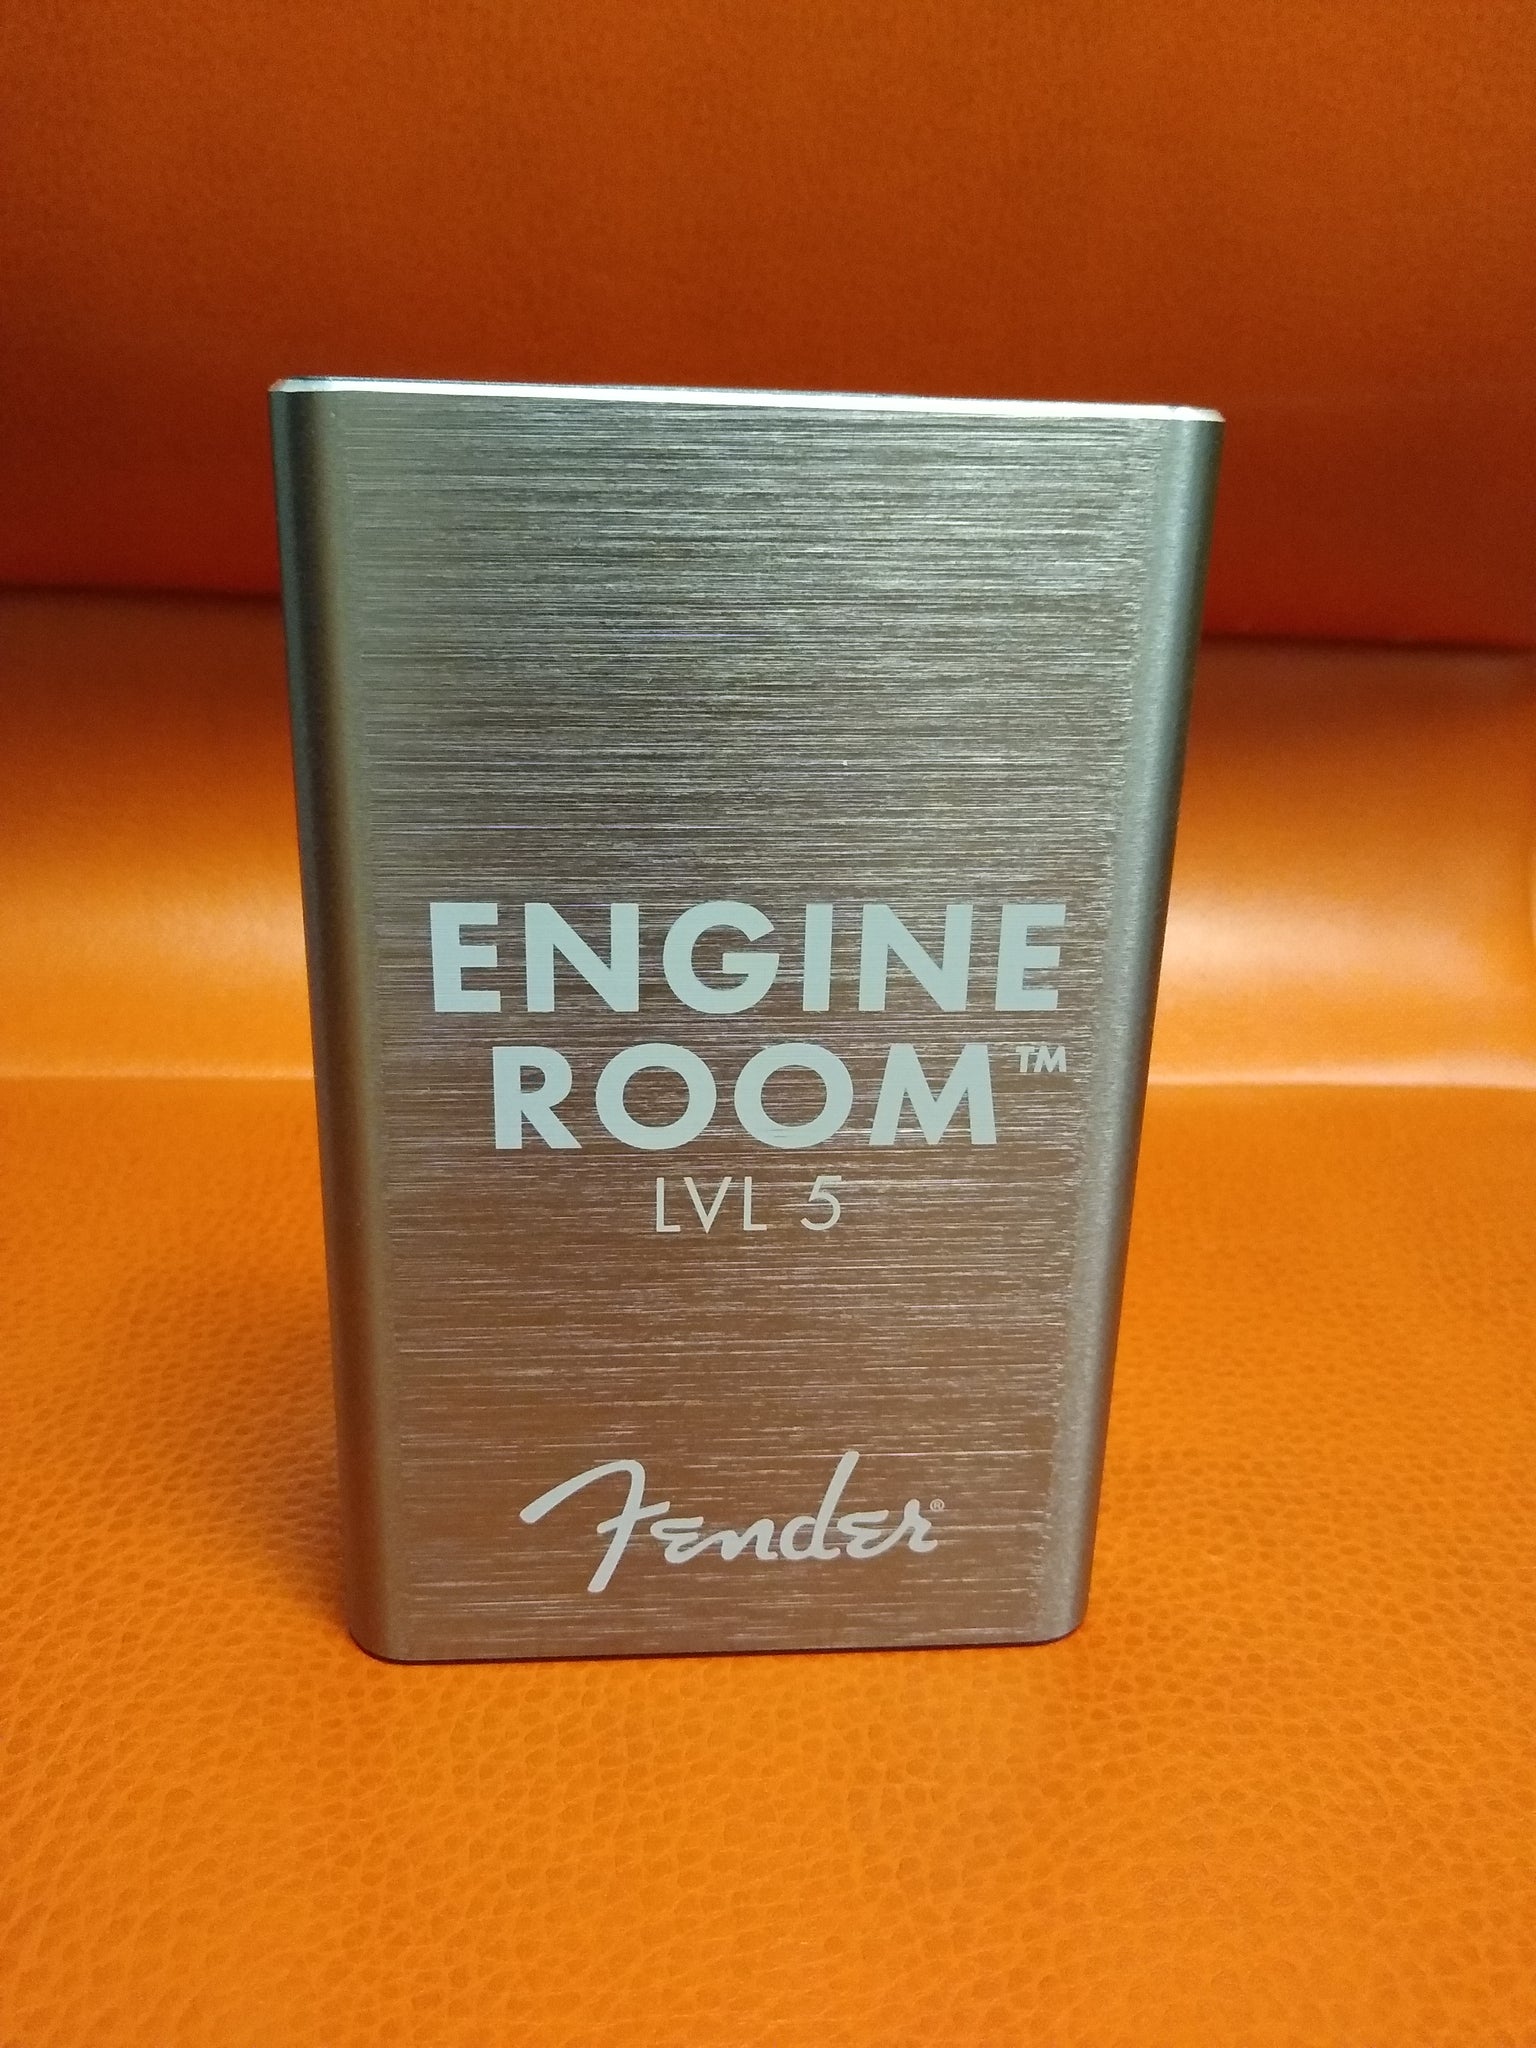 Fender Engine Room LVL 5 Power Supply used